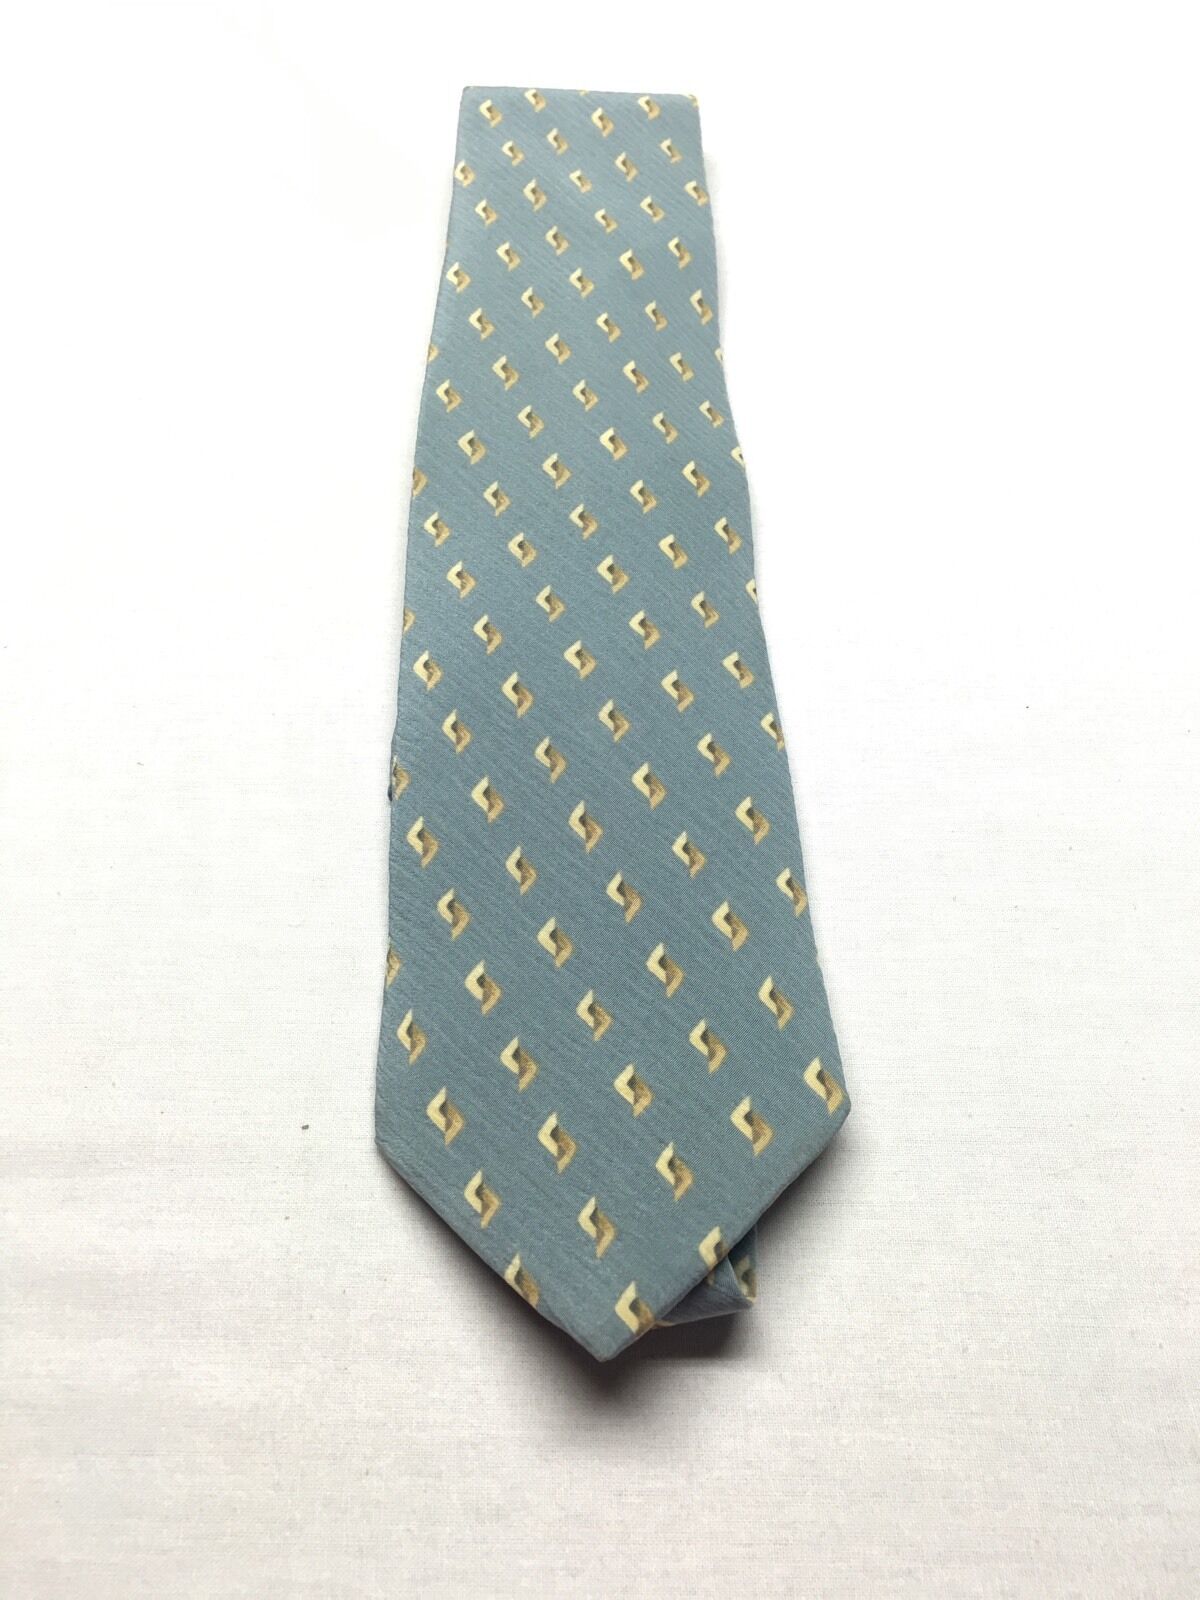 Giorgio Armani Cravatte Tie 100% Silk